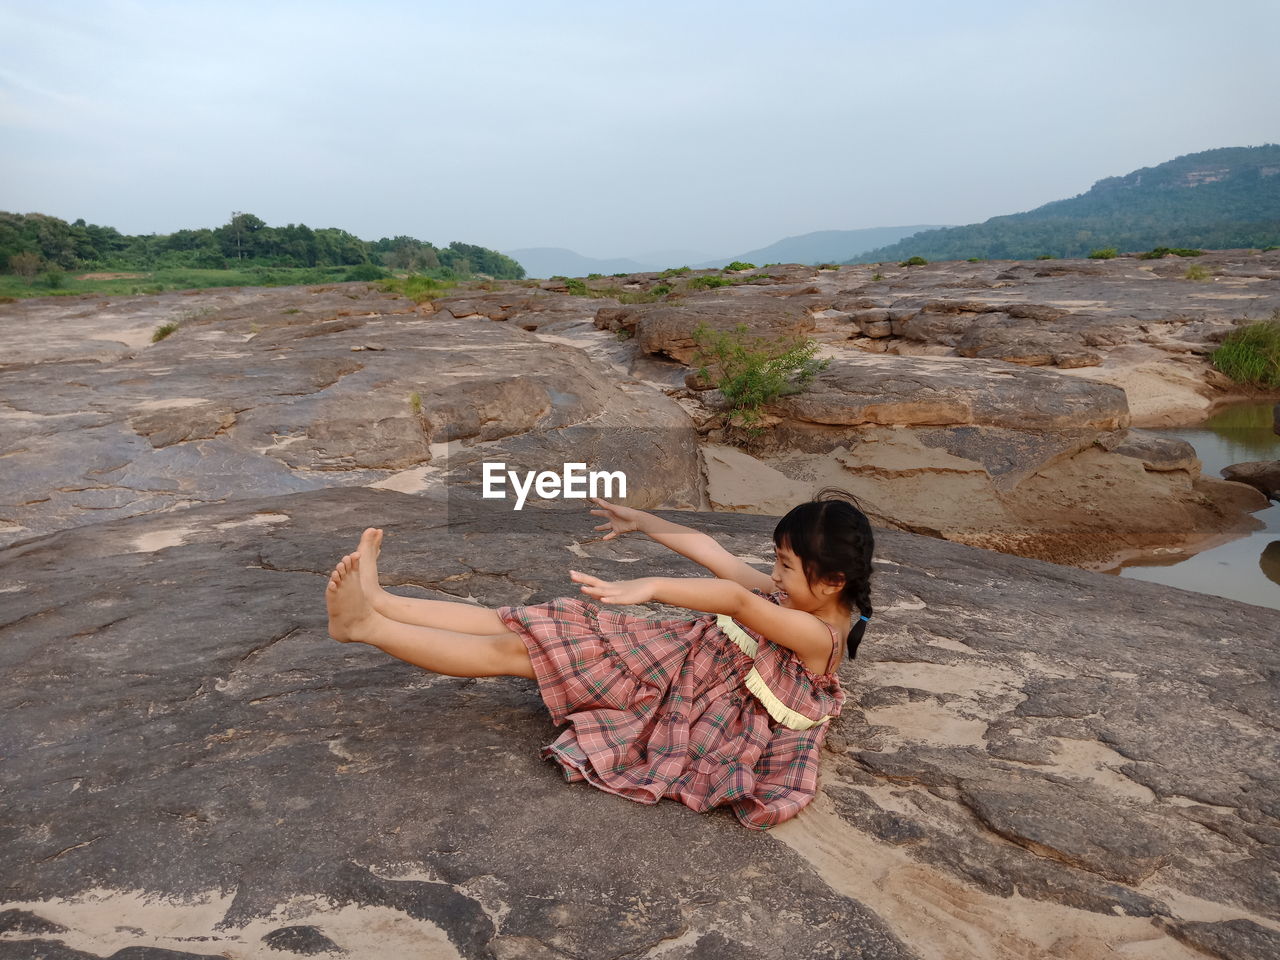 Girl sitting on rock against sky